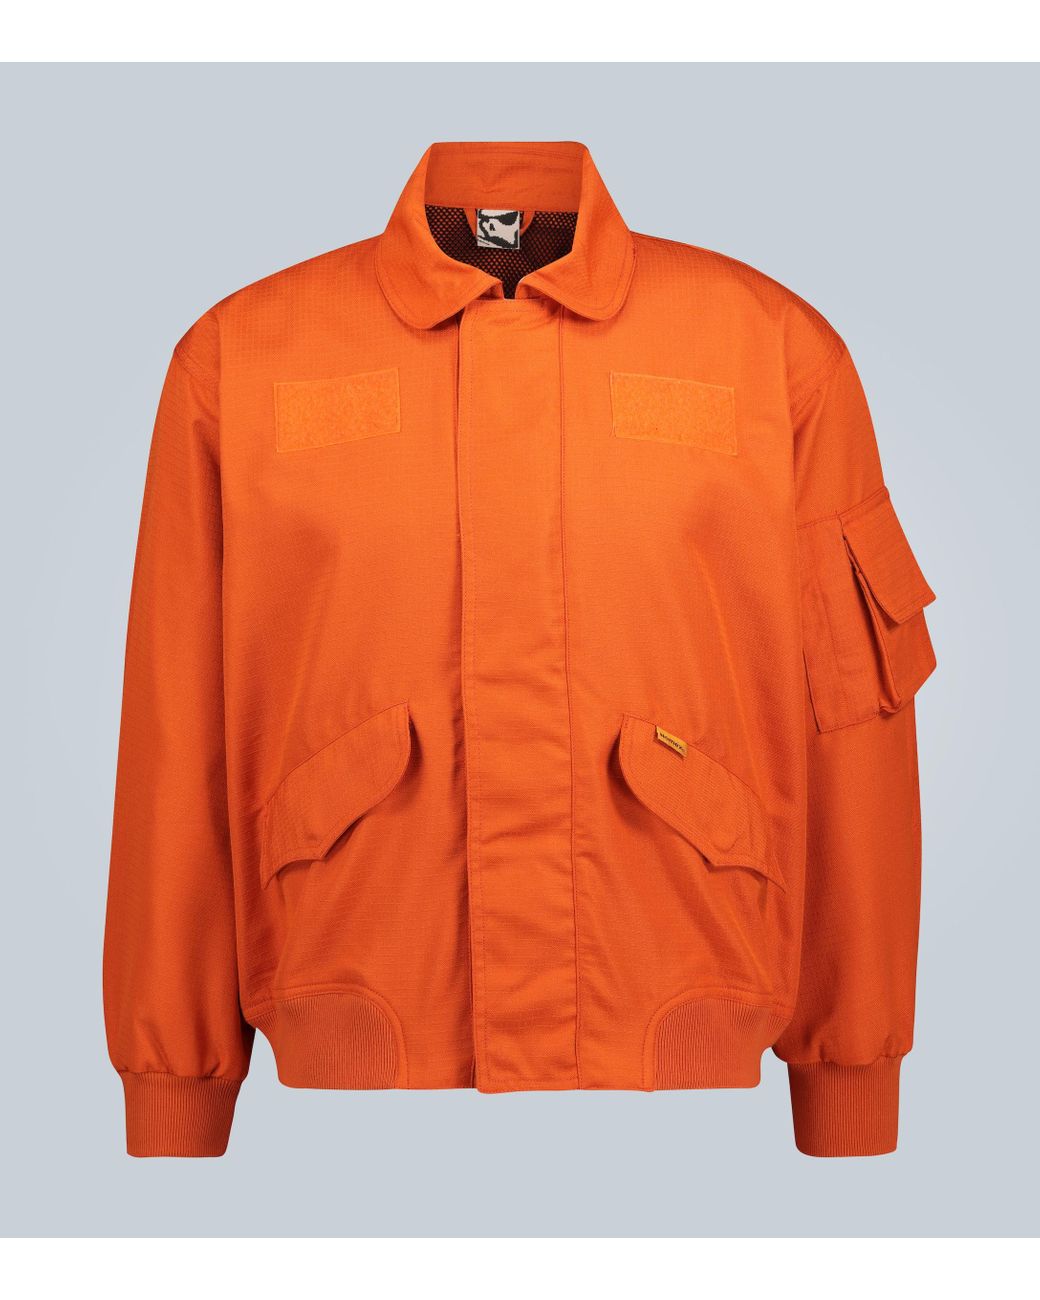 GR10K Nomex® Flight Jacket in Orange for Men - Lyst